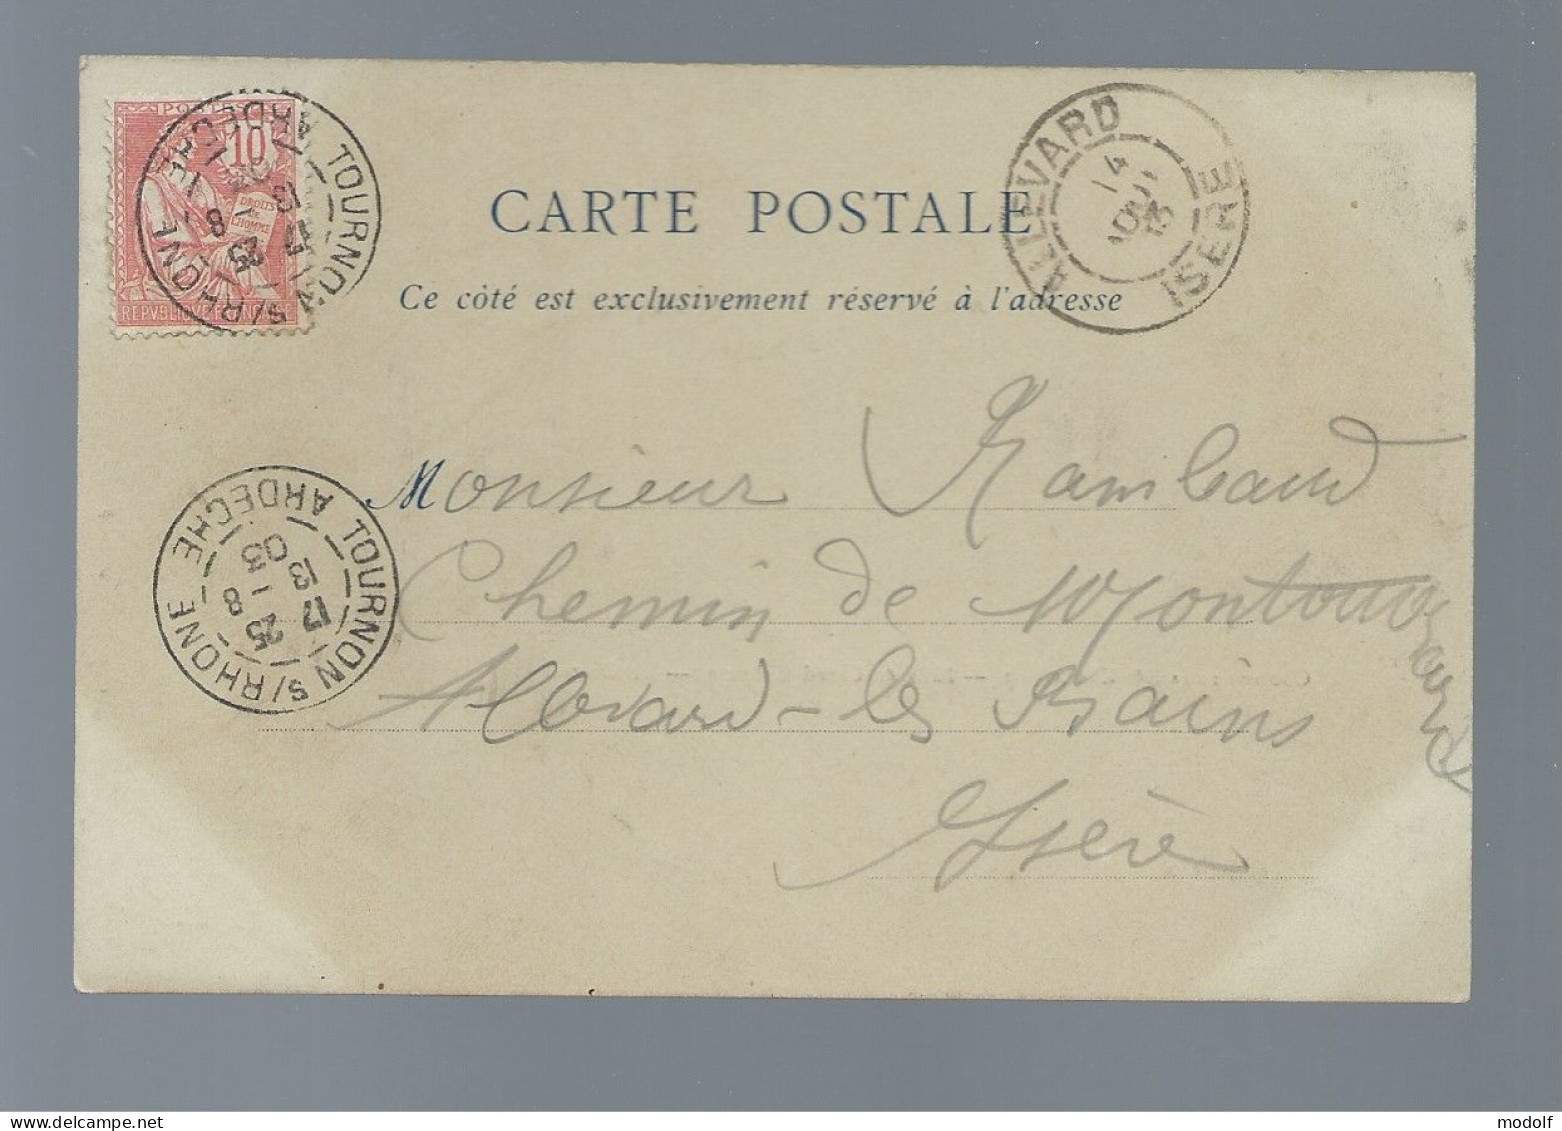 CPA - 38 - Couvent De La Gde Chartreuse - Salle Du Grand Chapître - Précurseur - Circulée En 1903 - Chartreuse